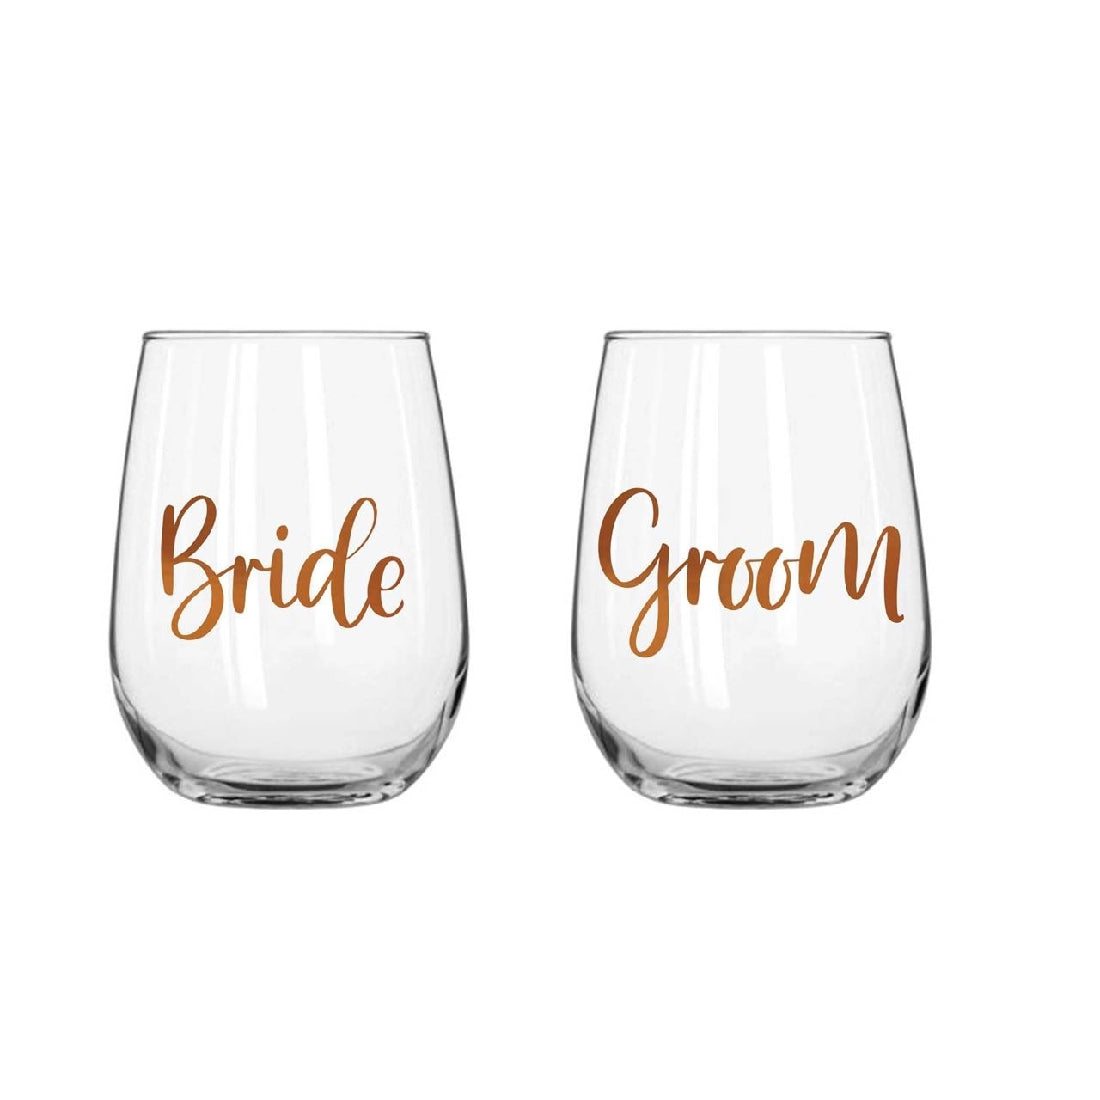 Bride / Groom Stemless Glasses Set